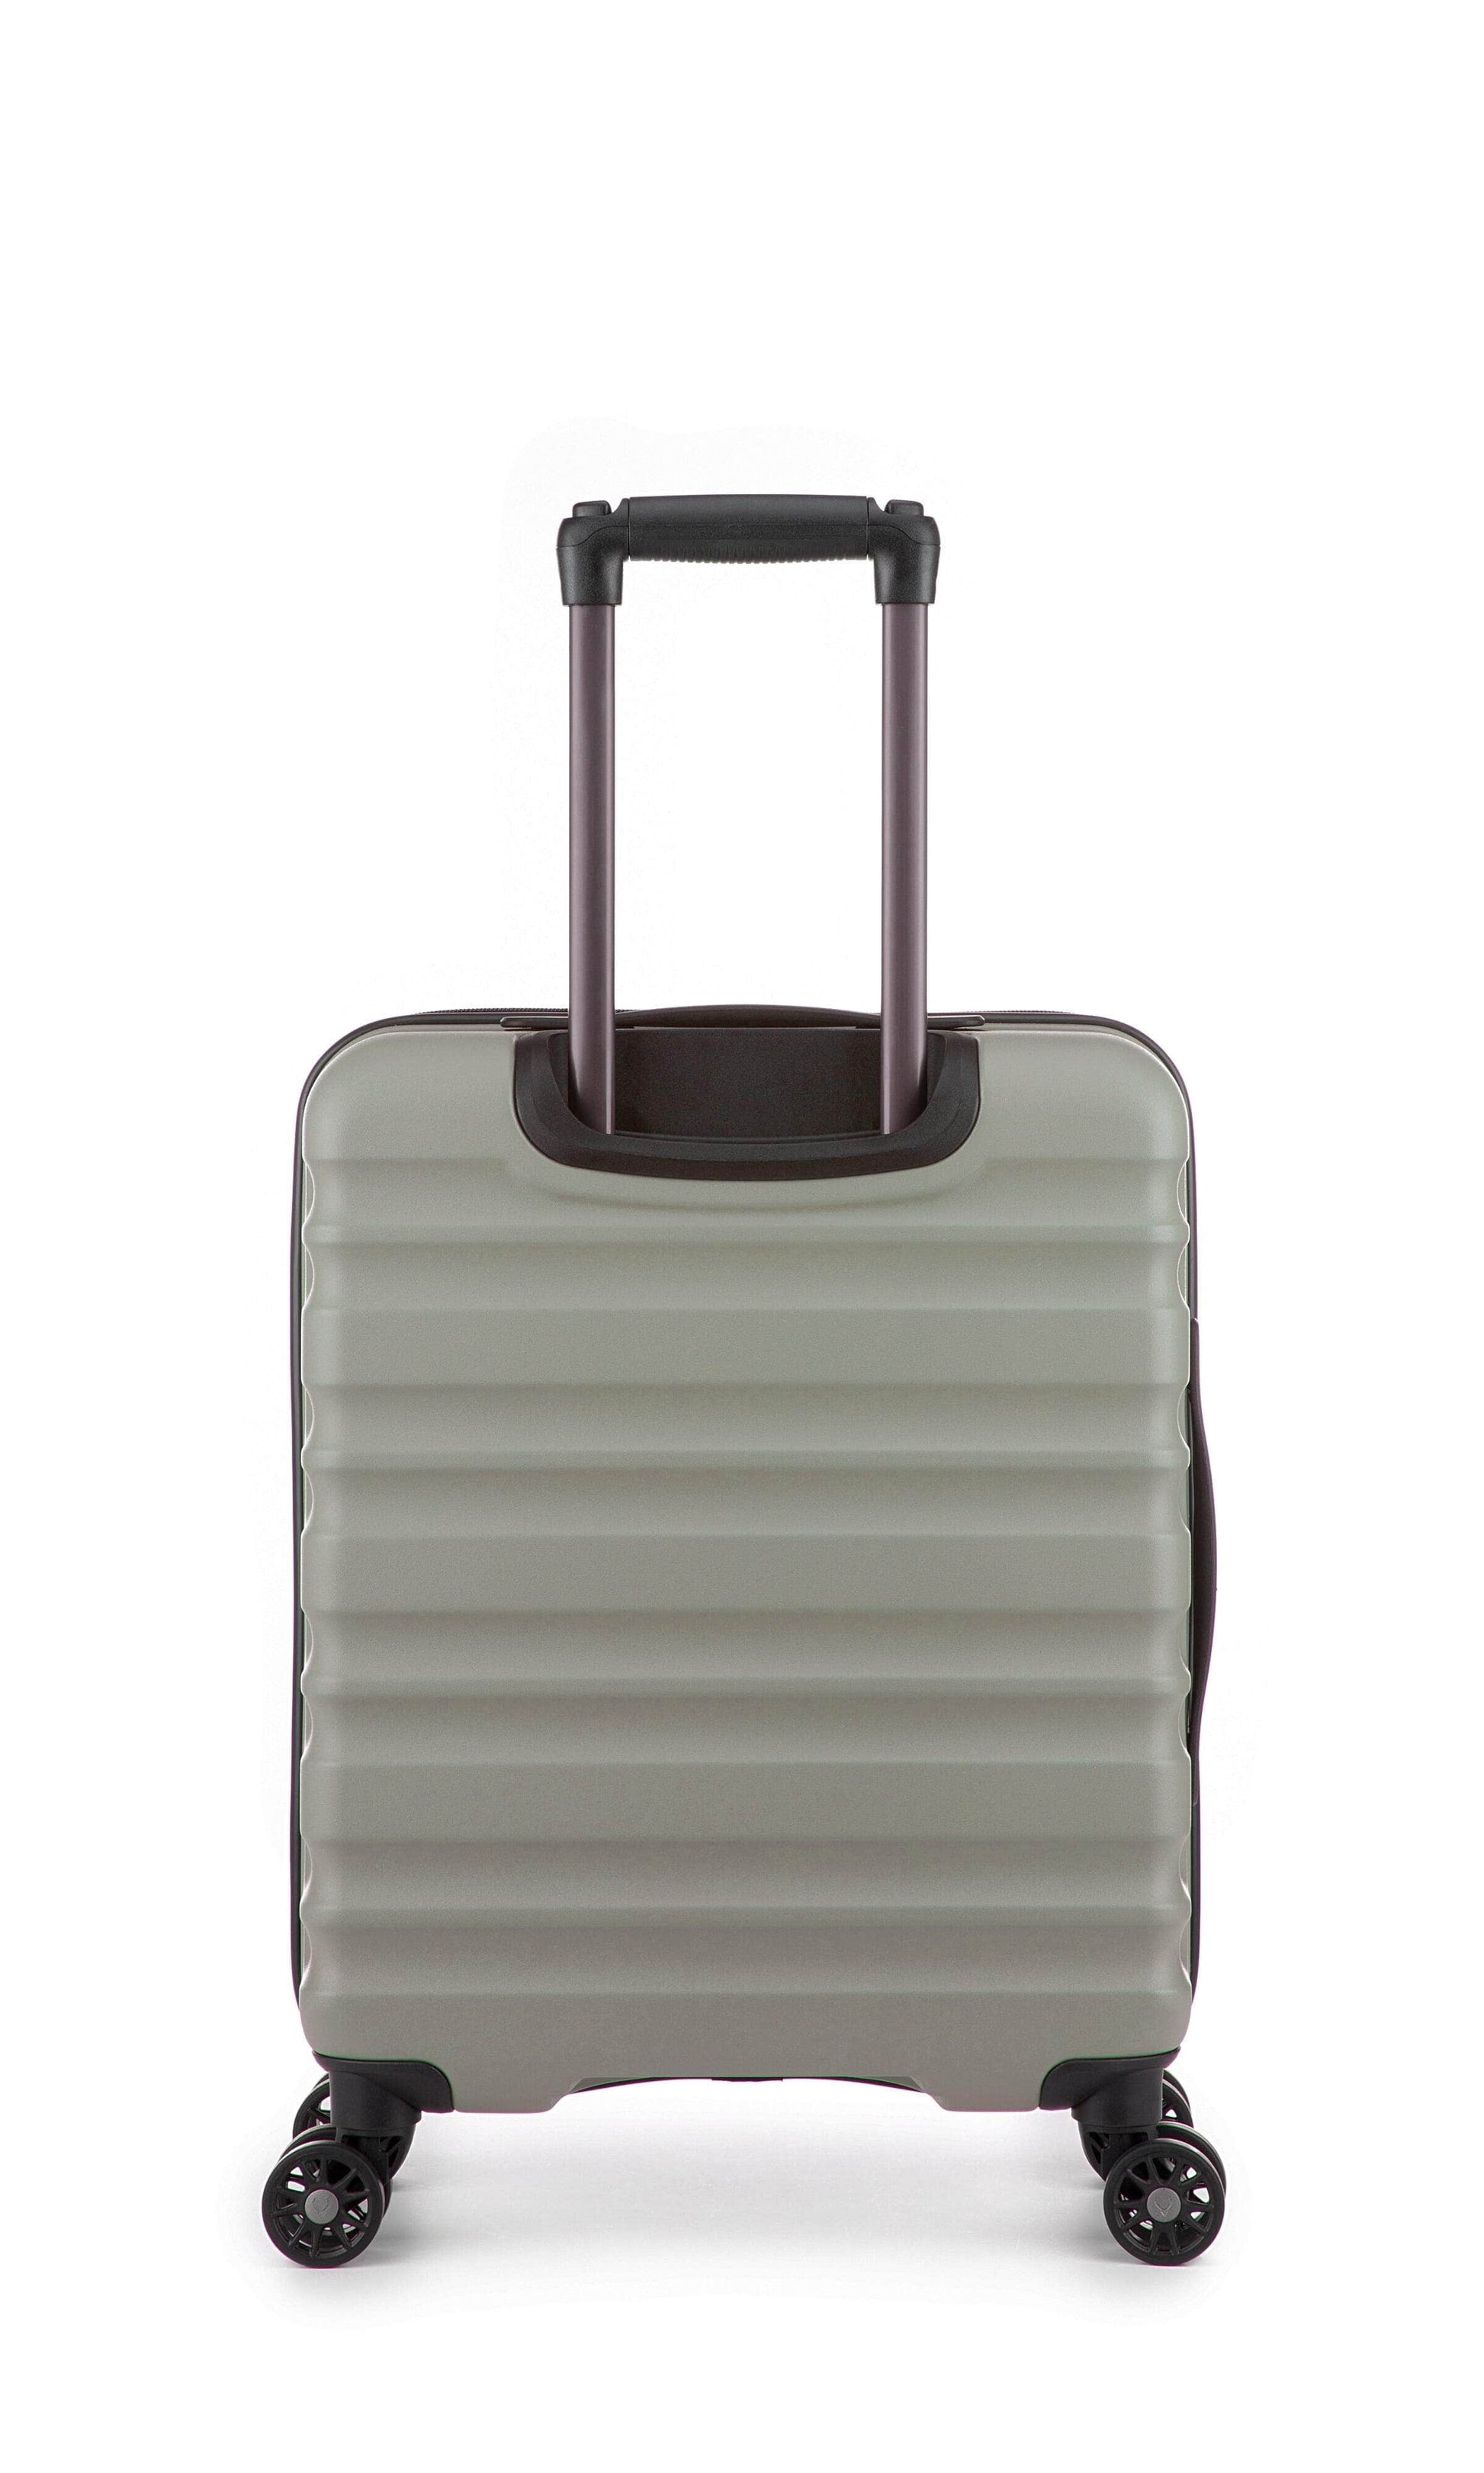 Antler Luggage -  Clifton cabin in sage - Hard Suitcases Clifton 55x40x20cm Cabin Suitcase Sage | Hard Suitcase | Antler UK